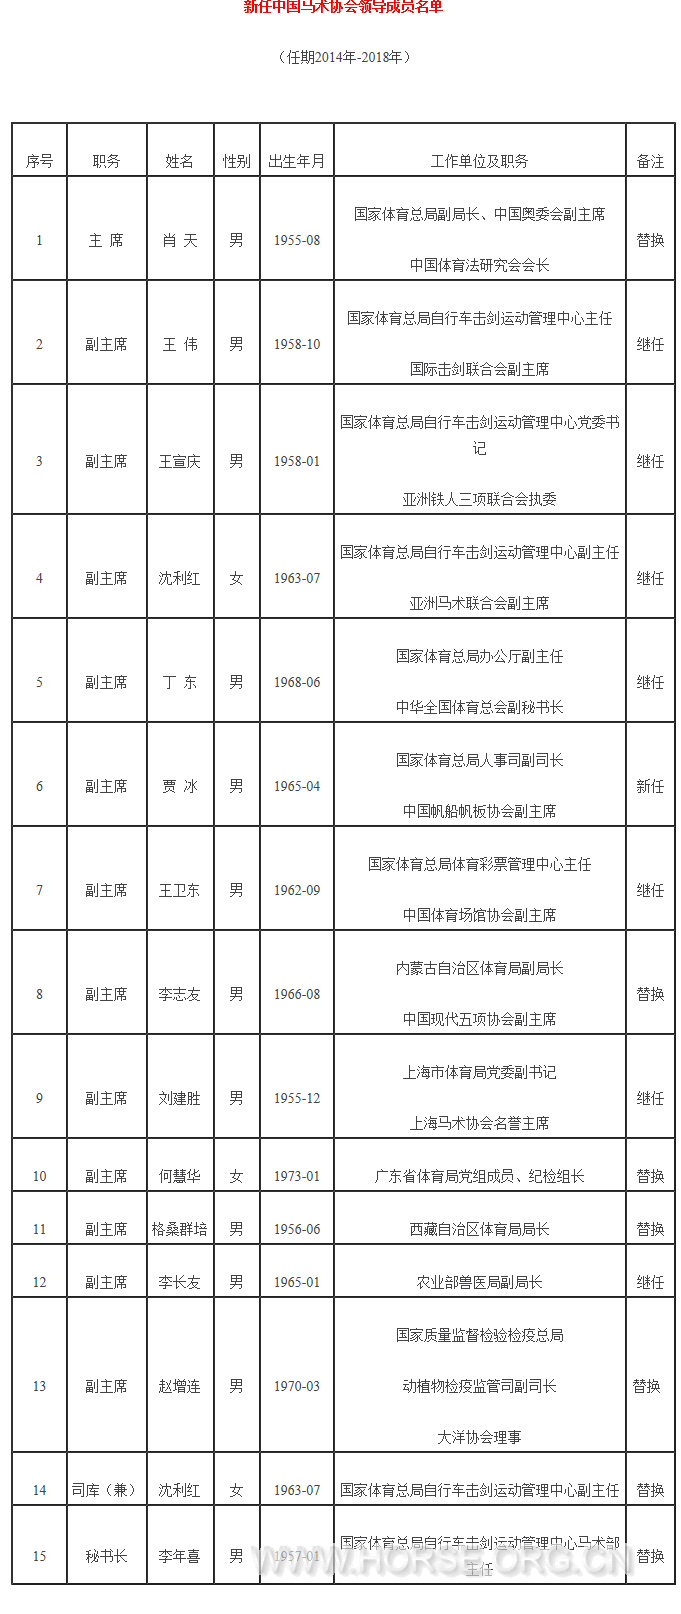 新任中国马术协会领导成员名单 - 中国马协 - 中国马术网.png